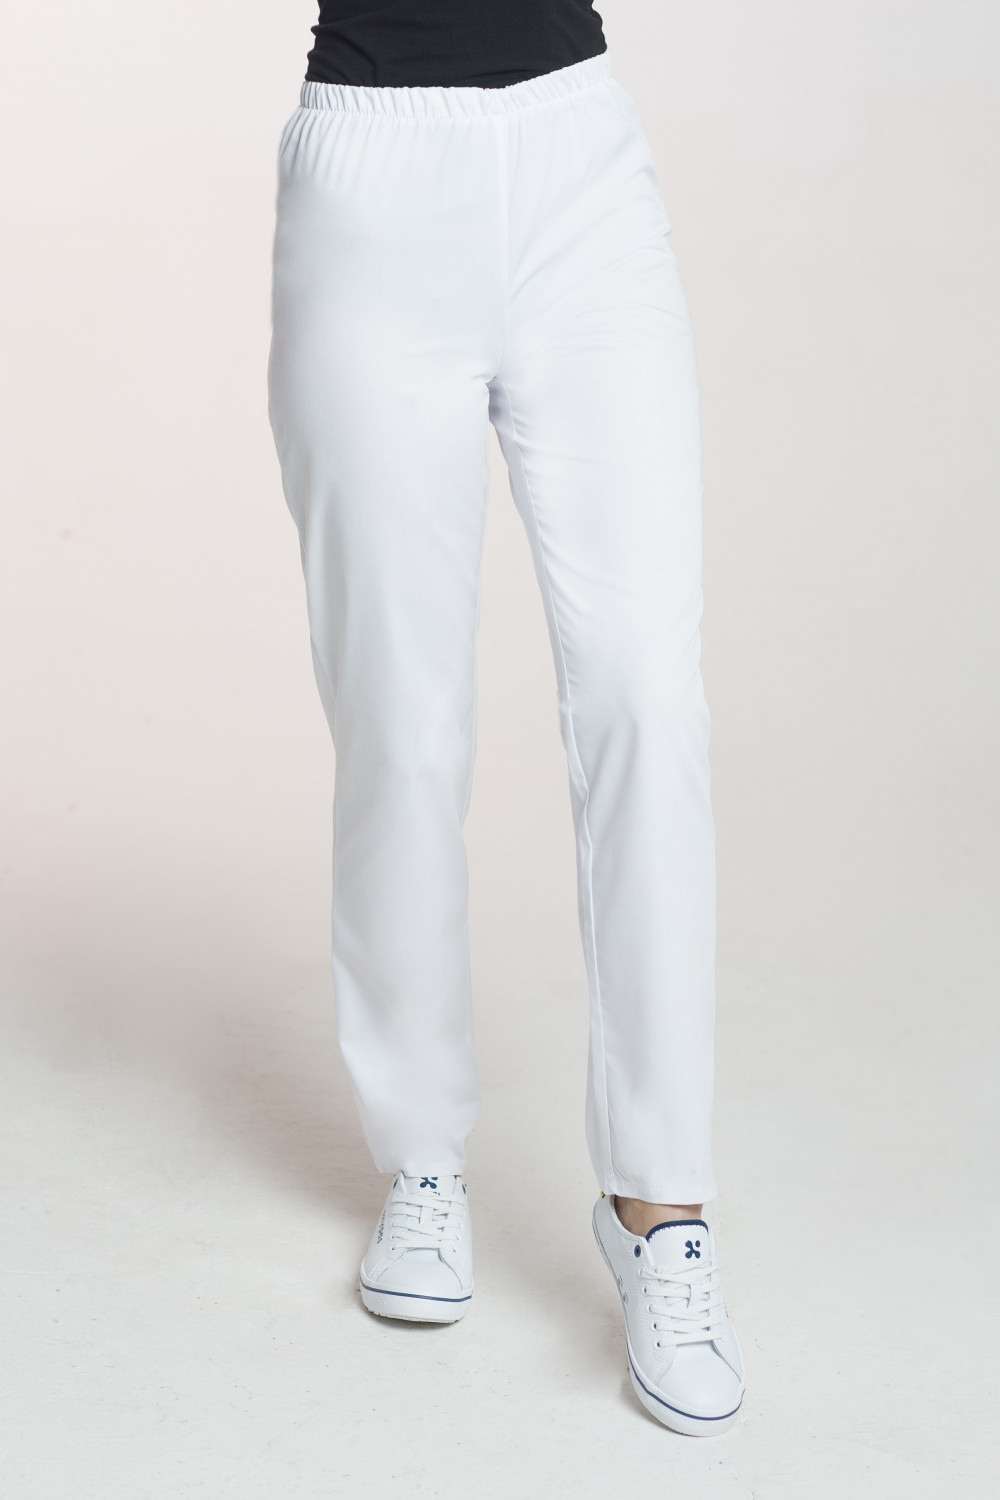 M-086X Elastyczne spodnie medyczne damskie biały